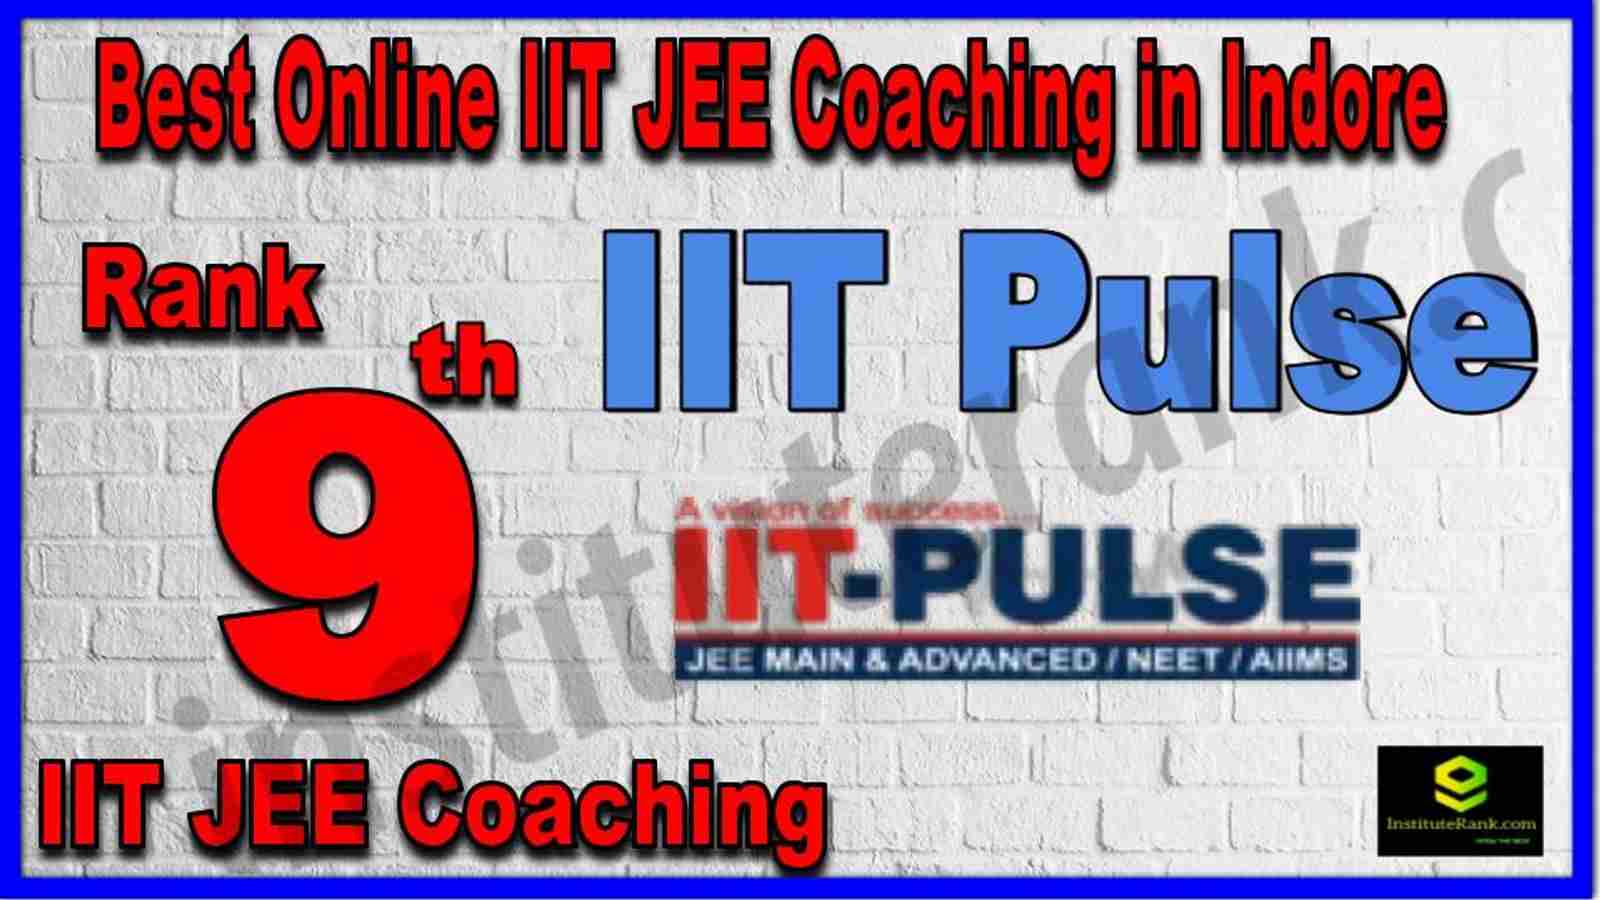 Rank 9th Best Online IIT JEE Coaching in Indore